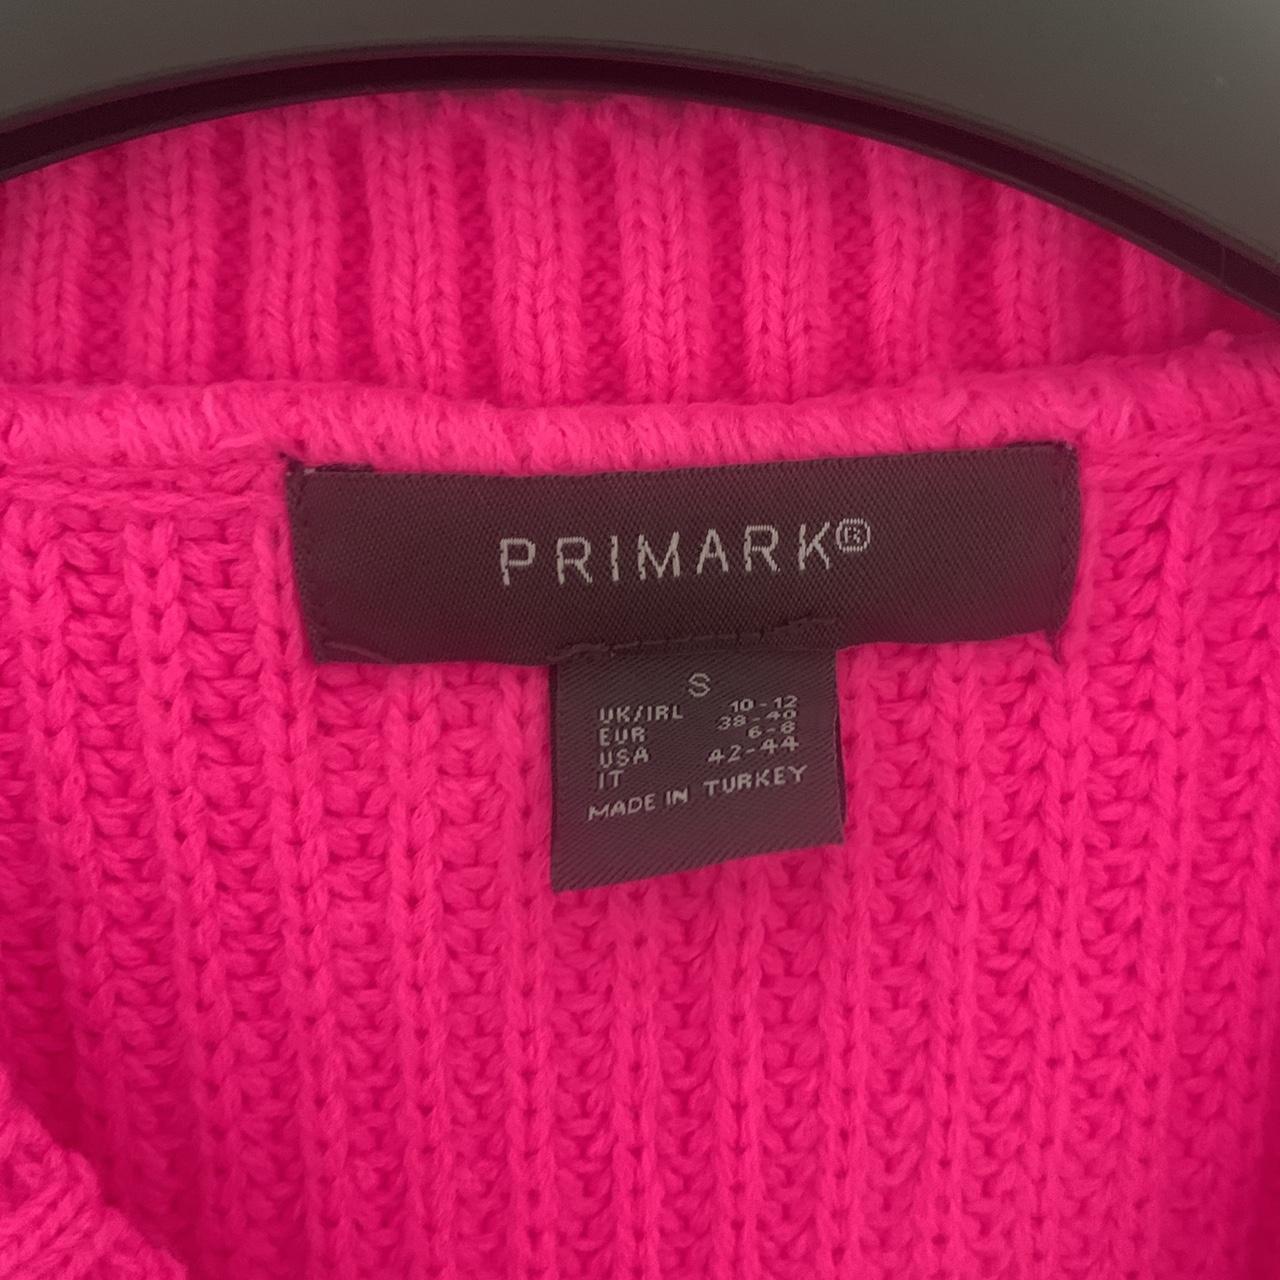 Primark Women's Pink Jumper | Depop